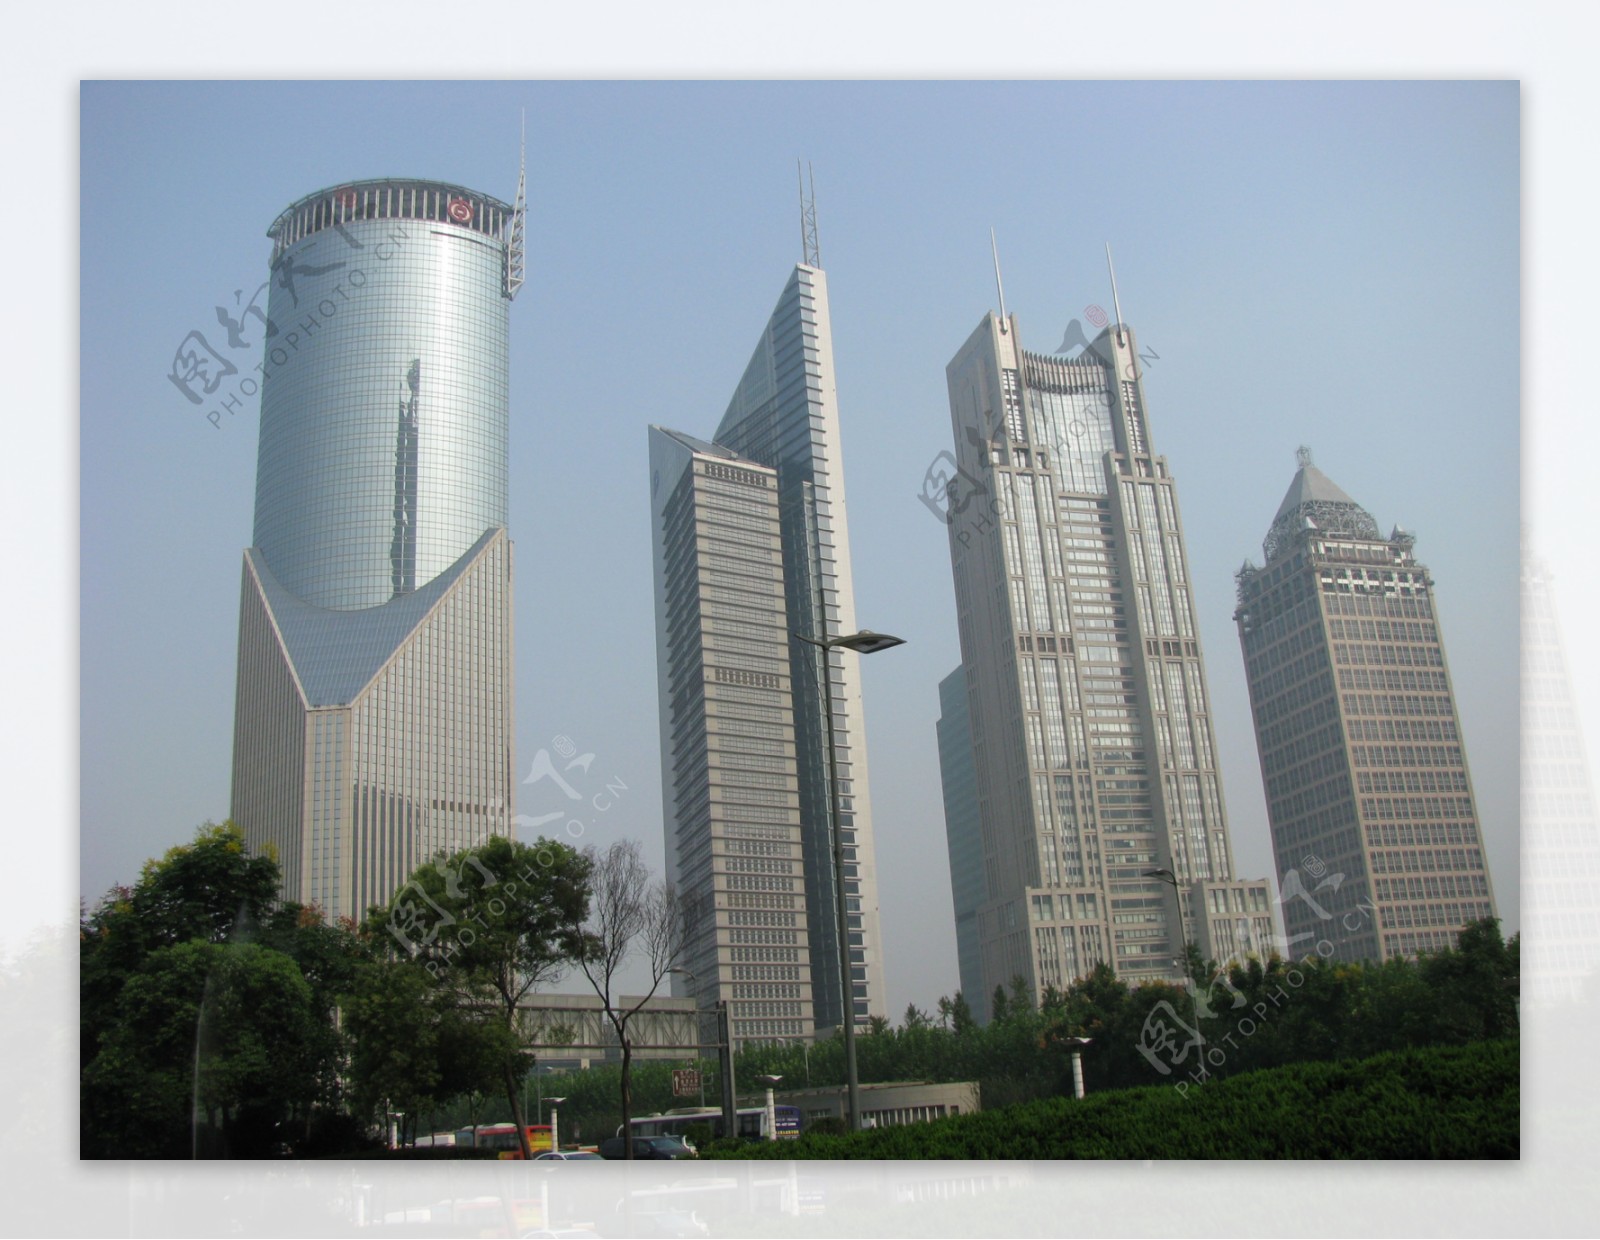 上海高楼群